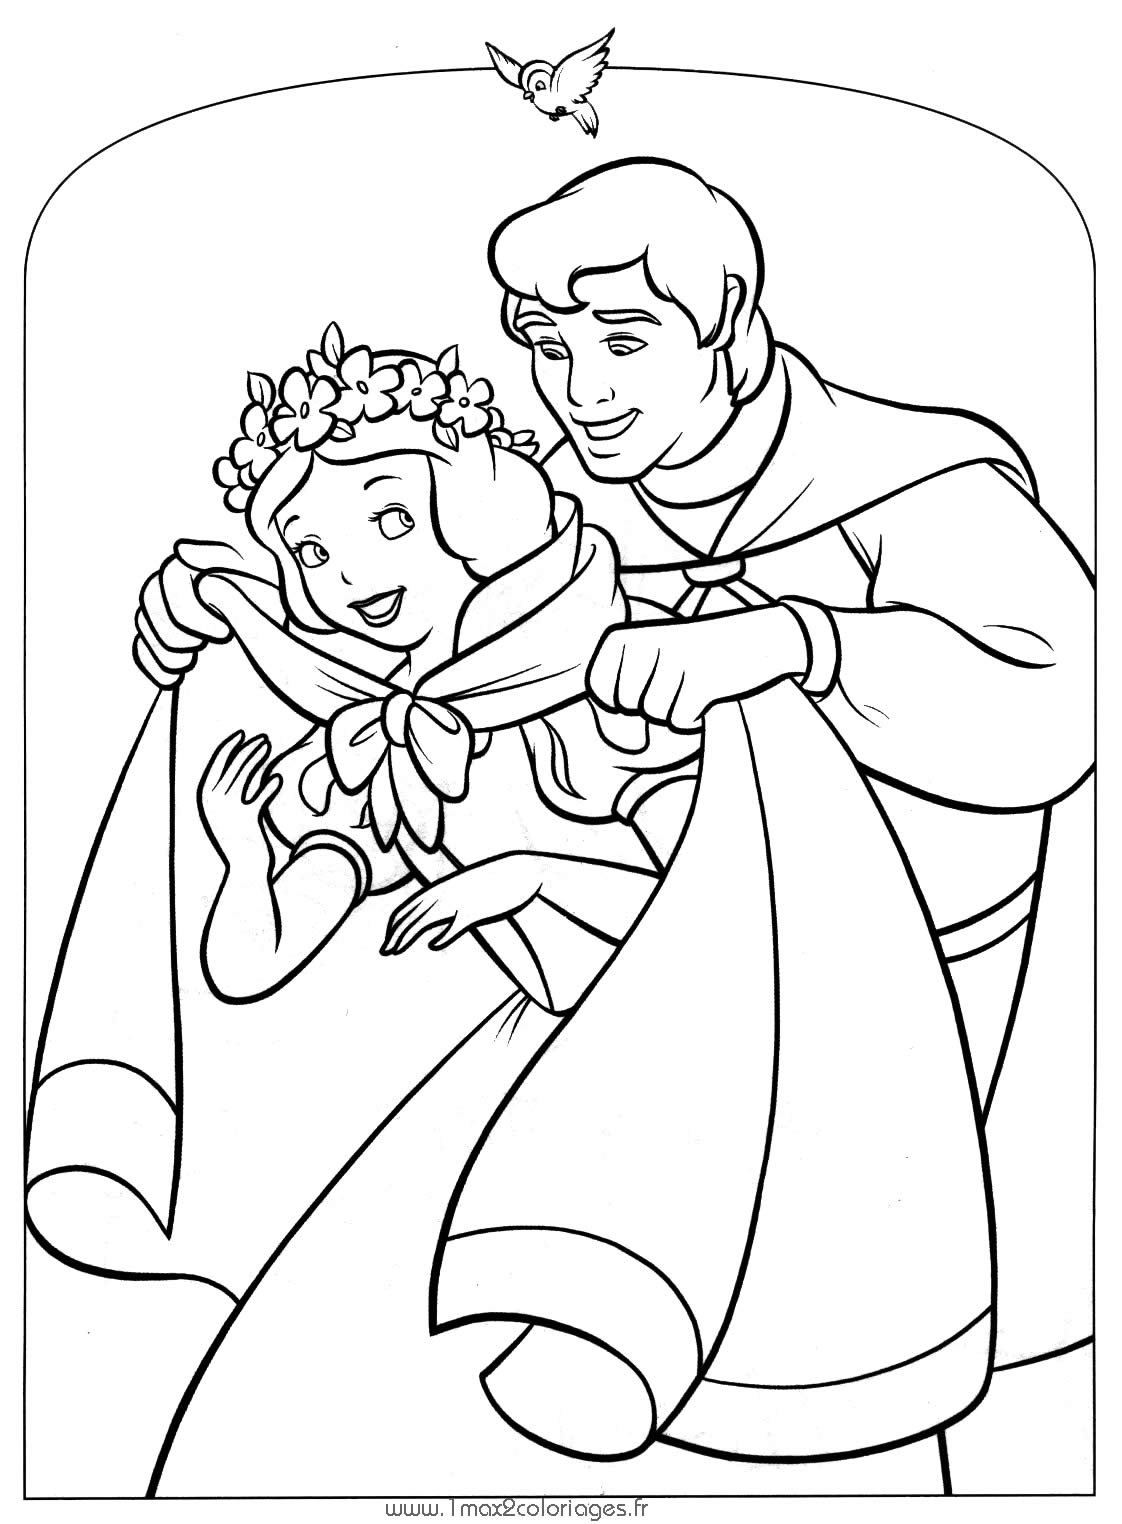 Desenhos para imprimir, colorir e pintar Princesas Disney